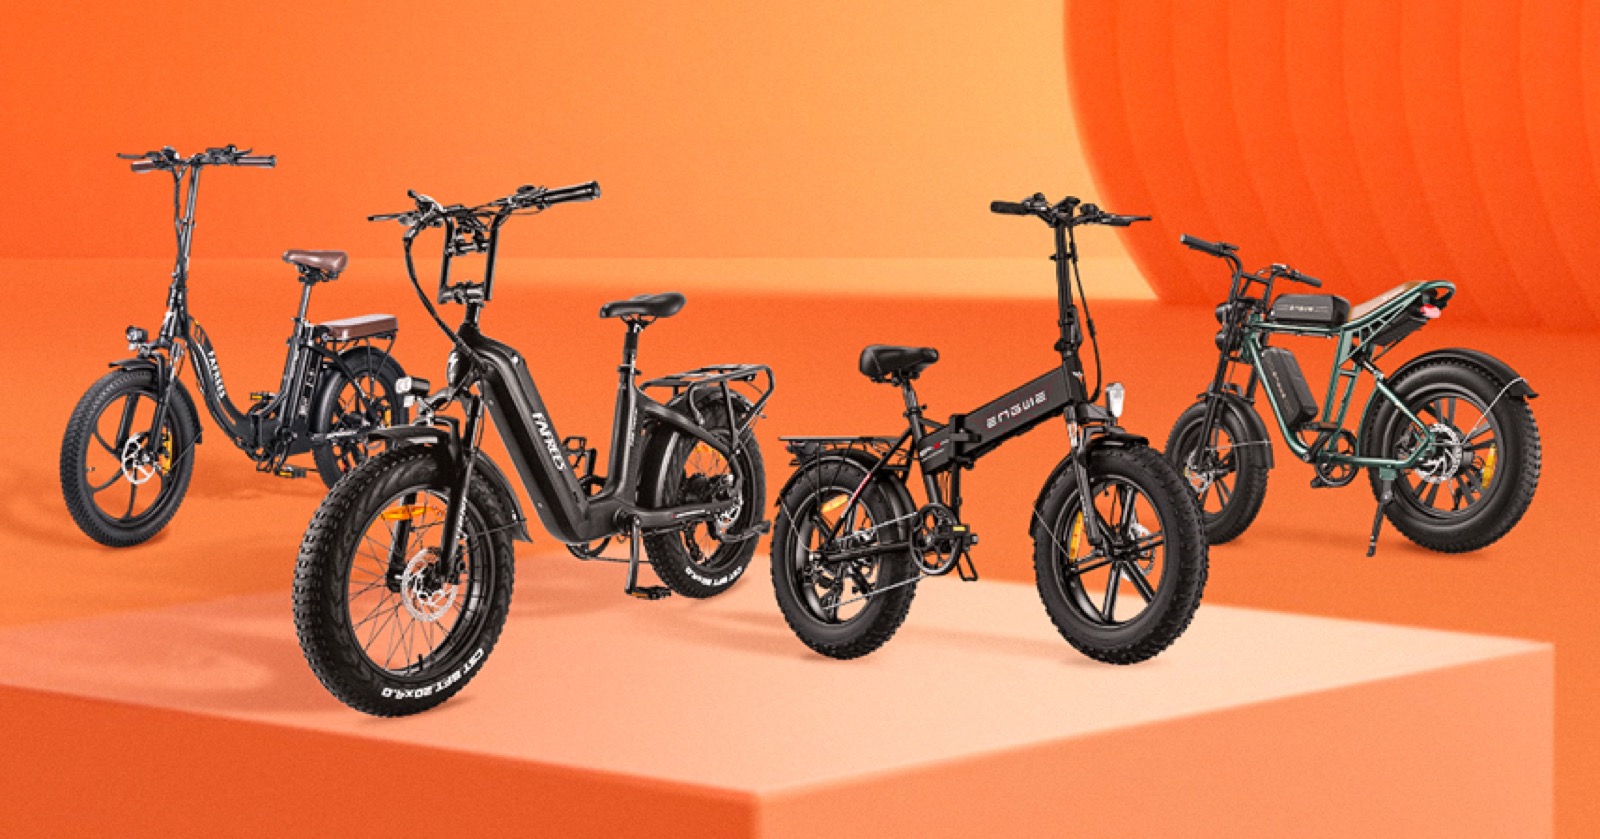 Saldi autunnali sulle bici elettriche, sconti fino a 400 € e accessori in regalo